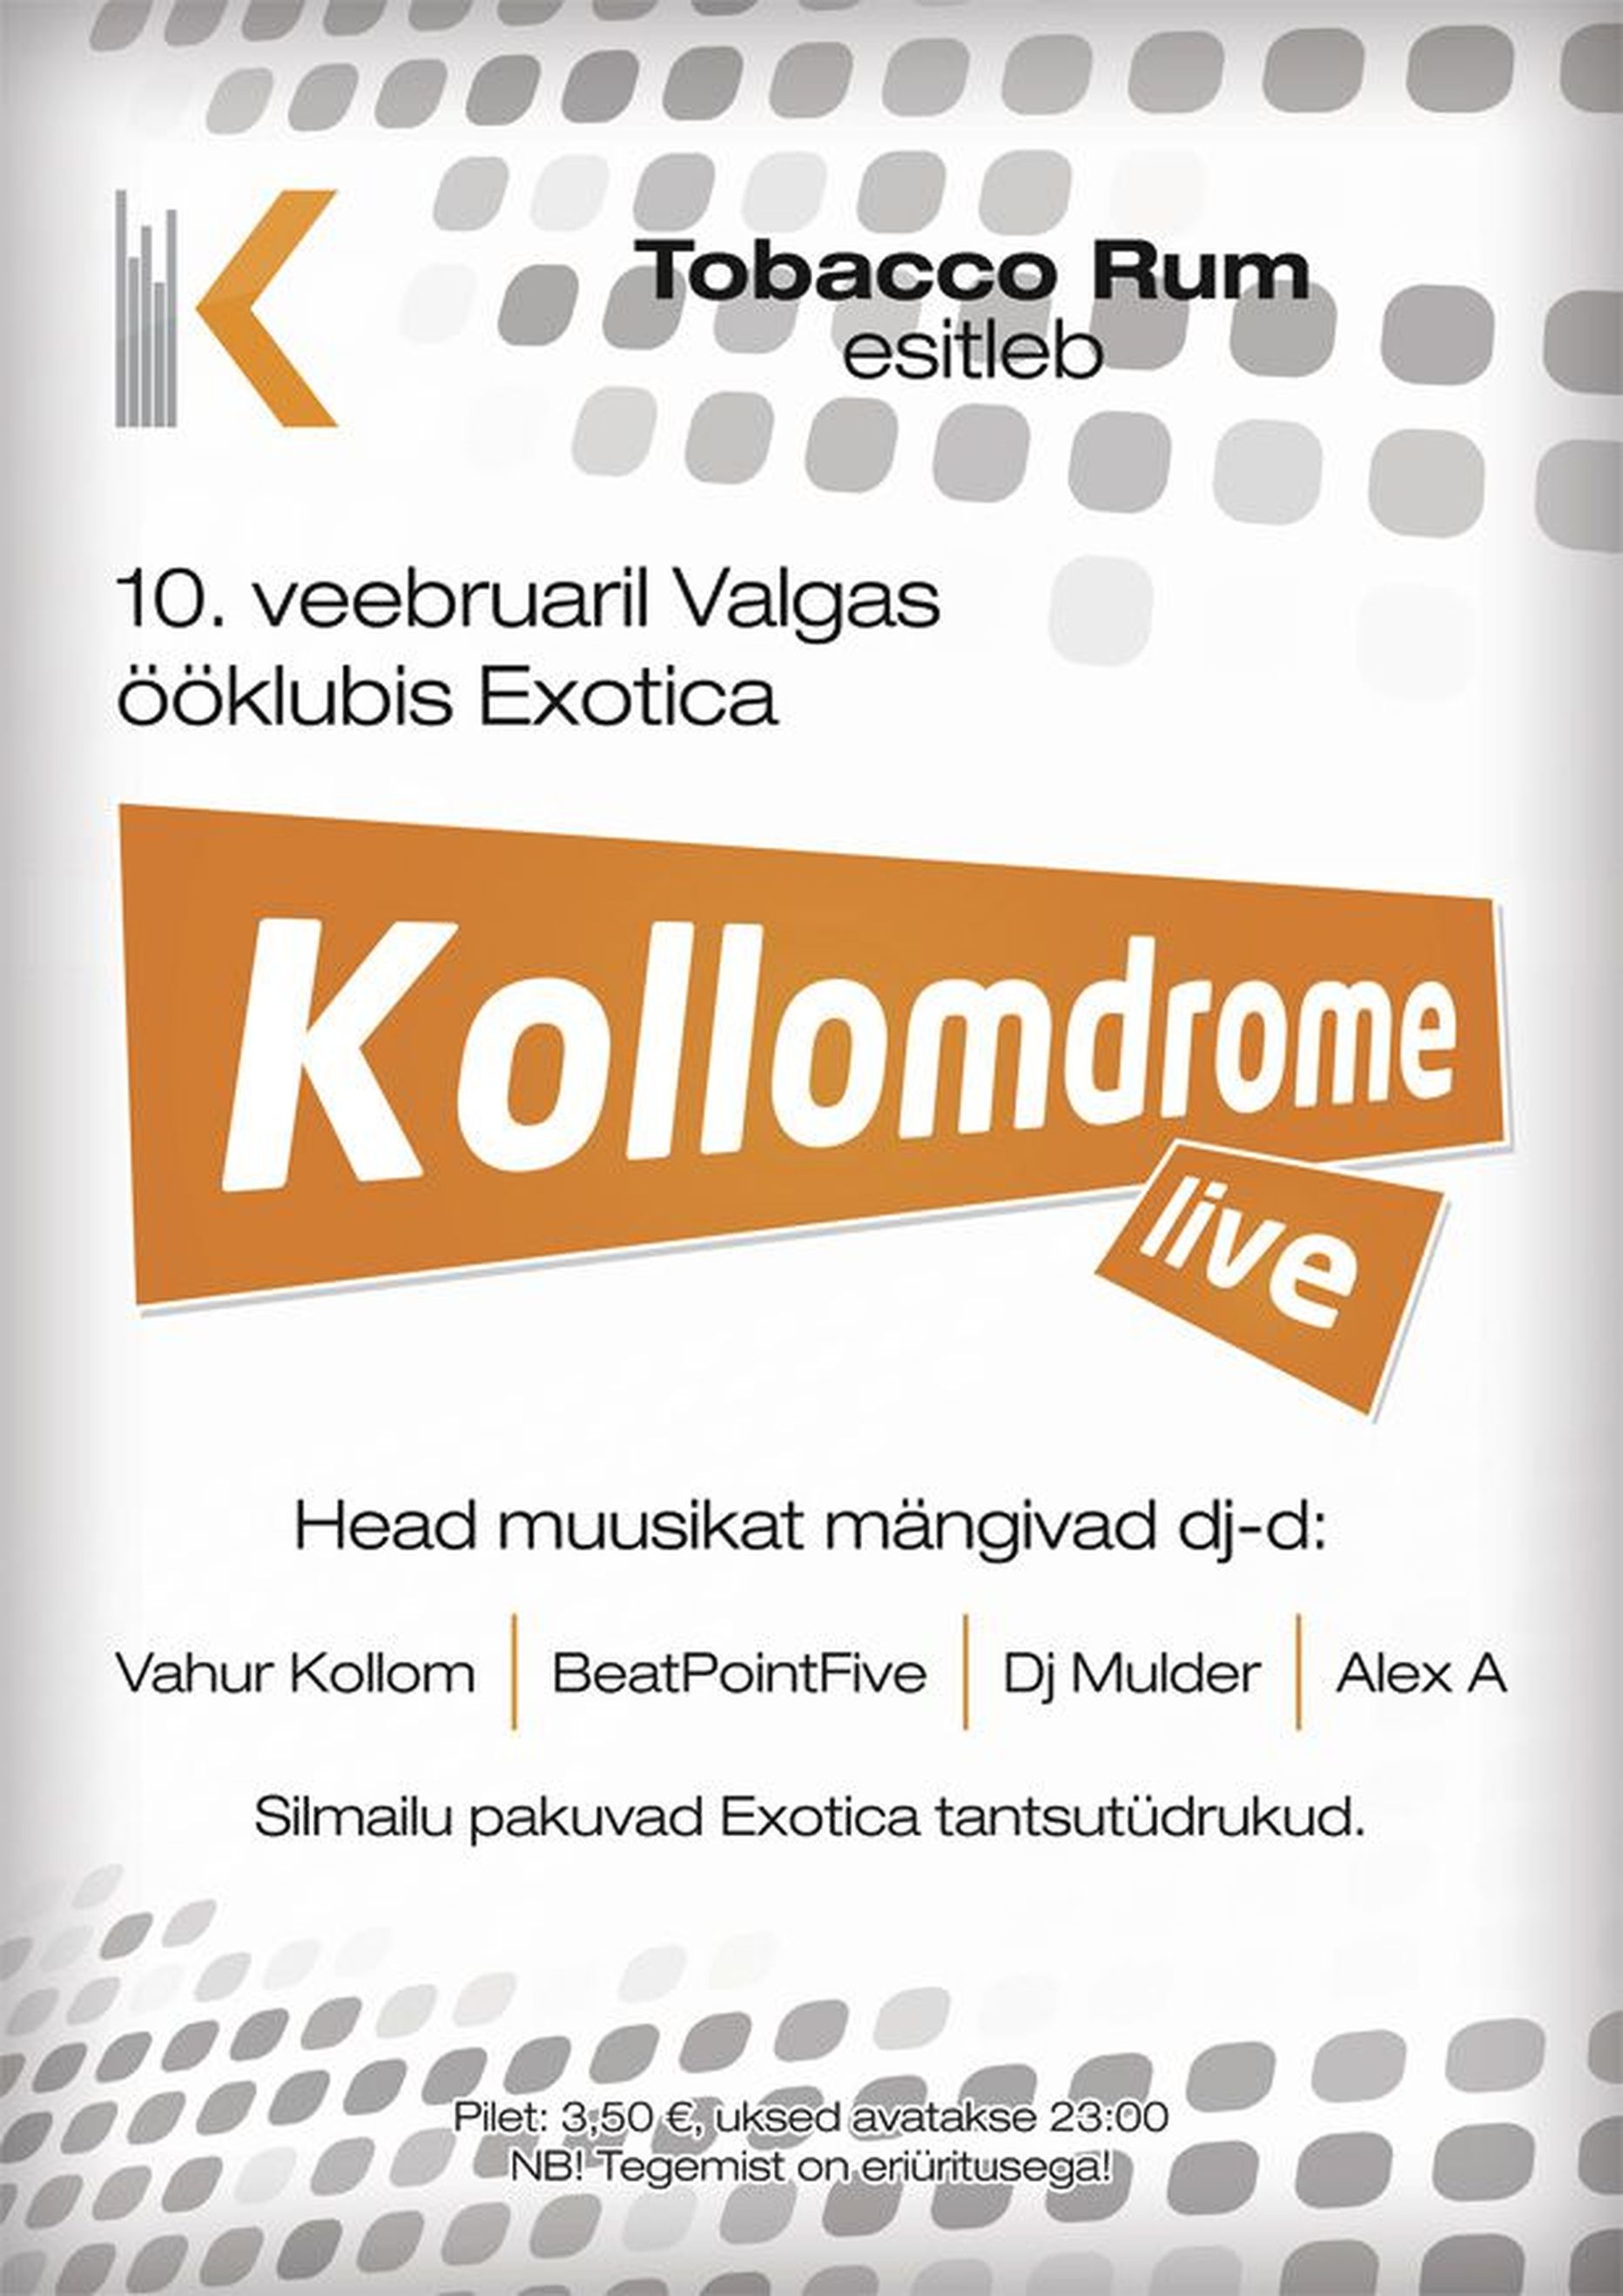 Kollomdrome live sel reedel Exoticas!